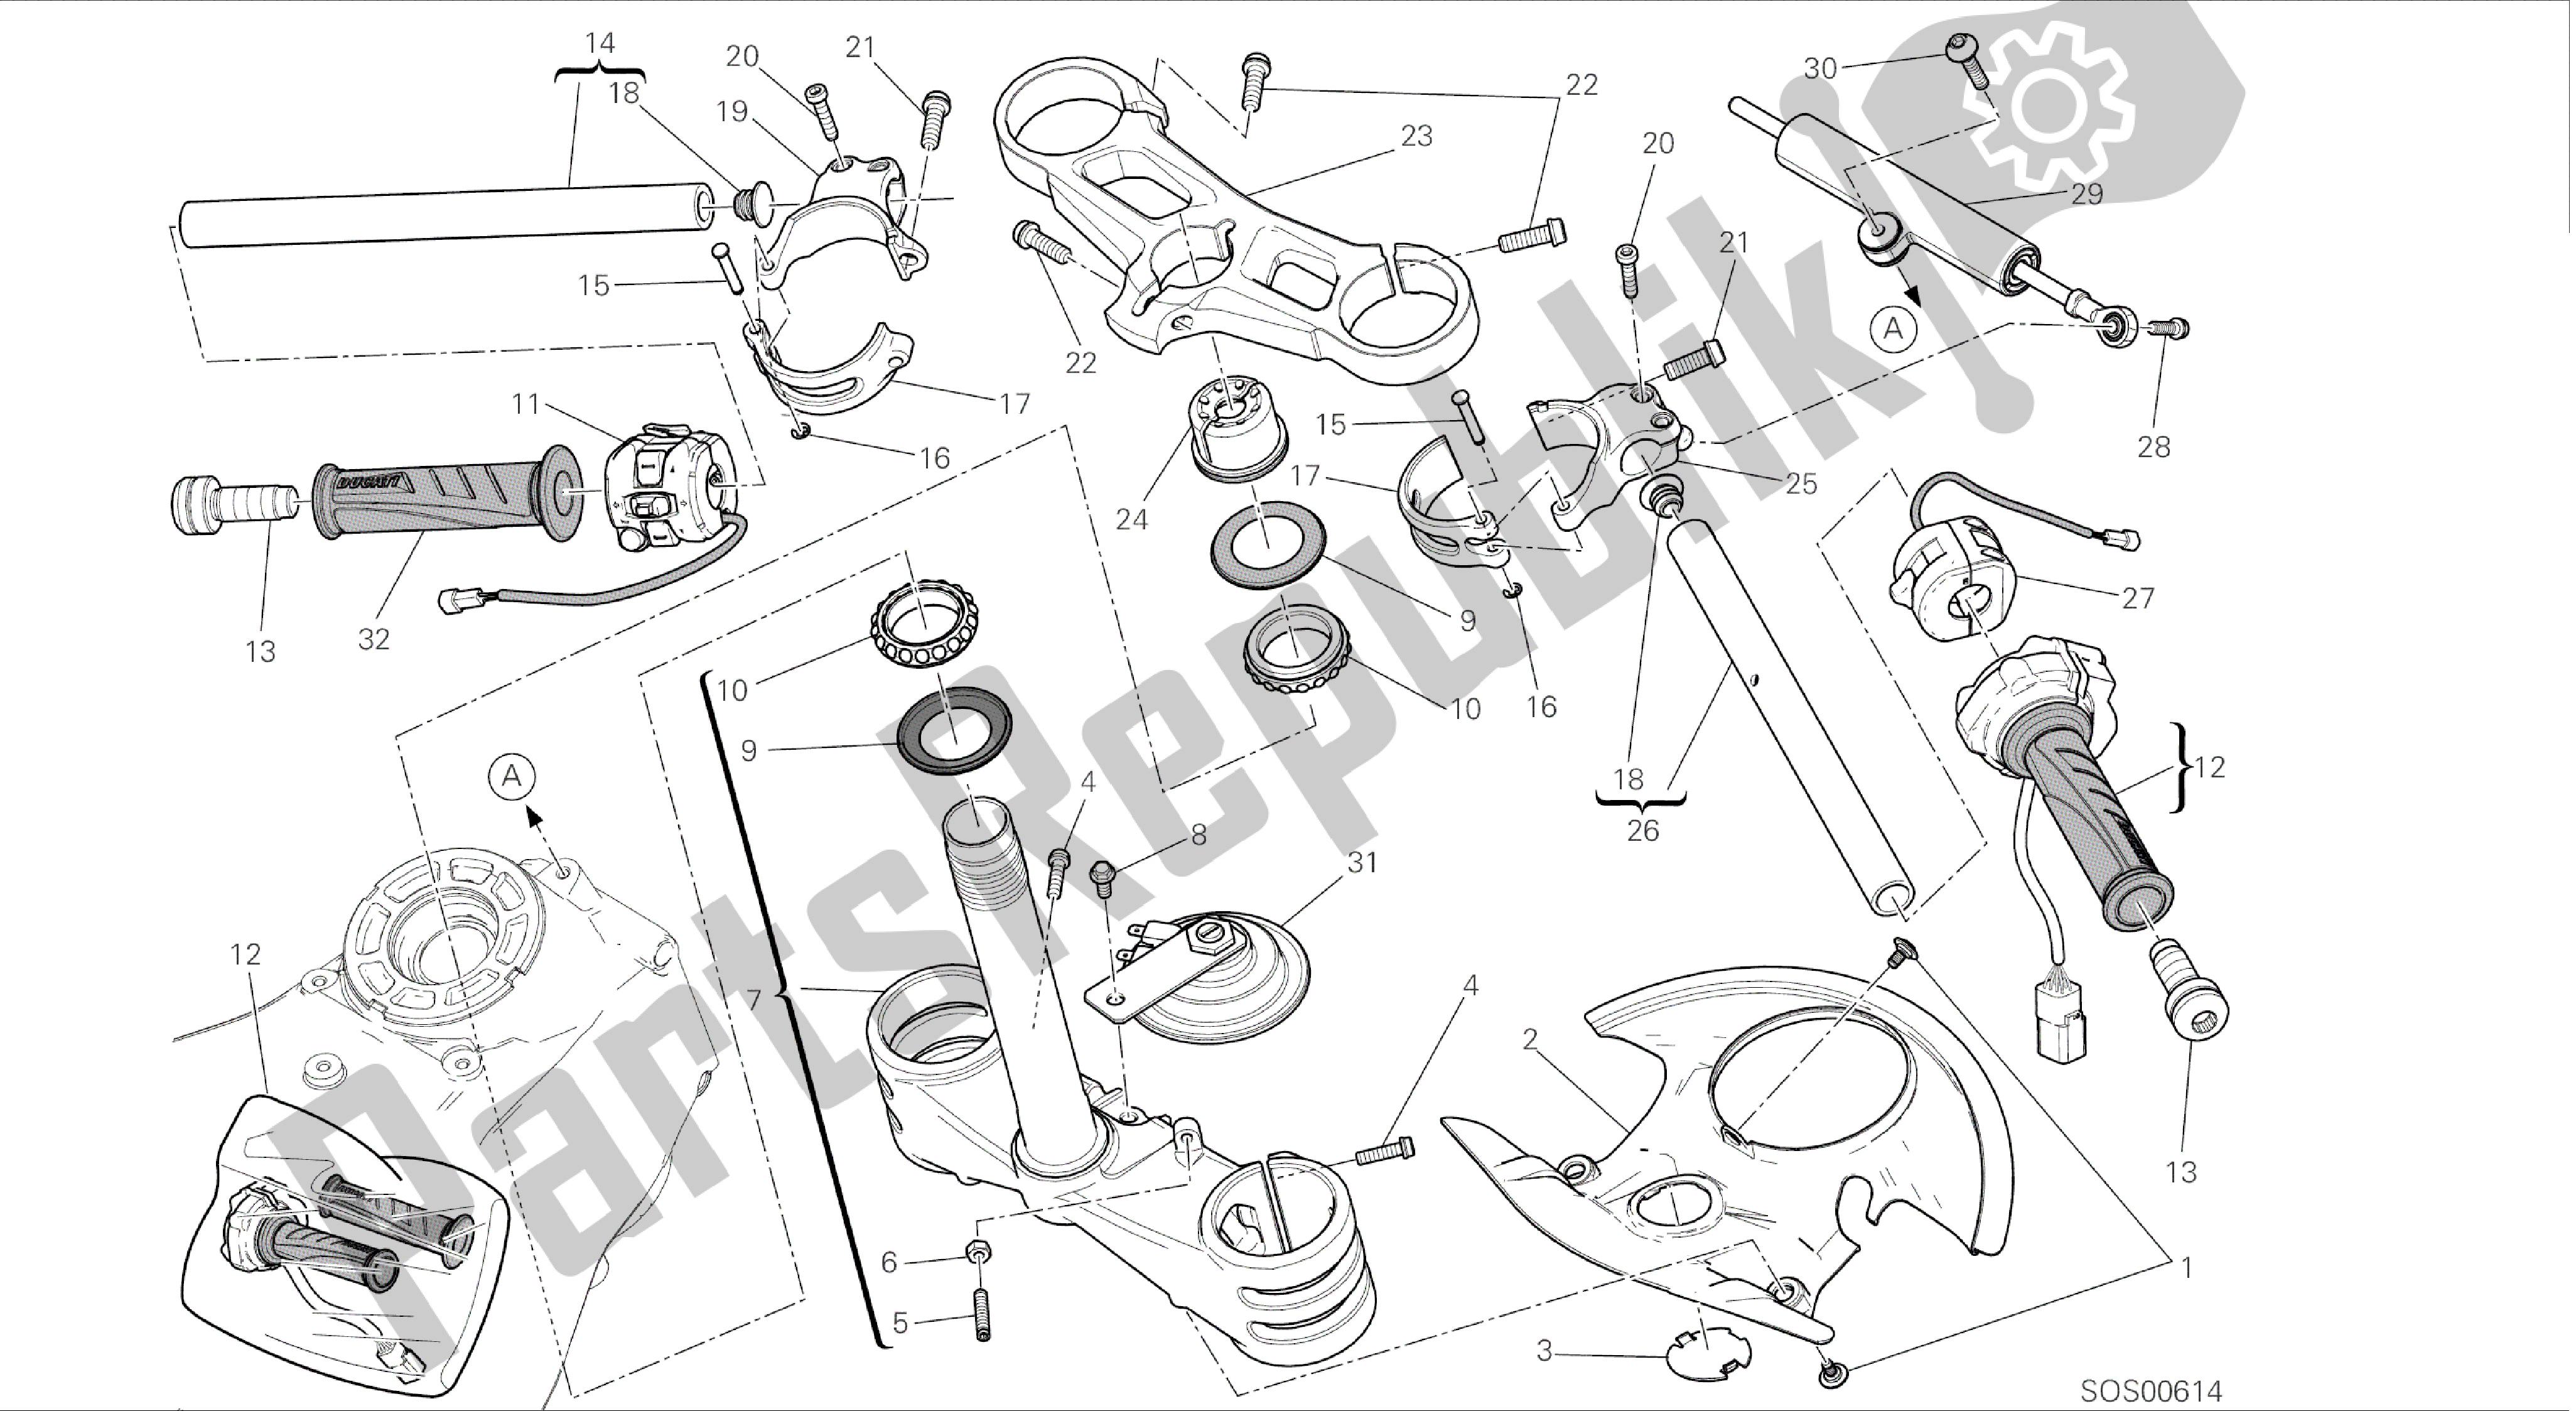 Todas las partes para Dibujo 021 - Semimanubri - Ammortizzatore Di Sterzo [mod: 899abs; Xst: Marco De Grupo Aus, Eur, Fra, Jap, Twn] de Ducati Panigale 899 2014